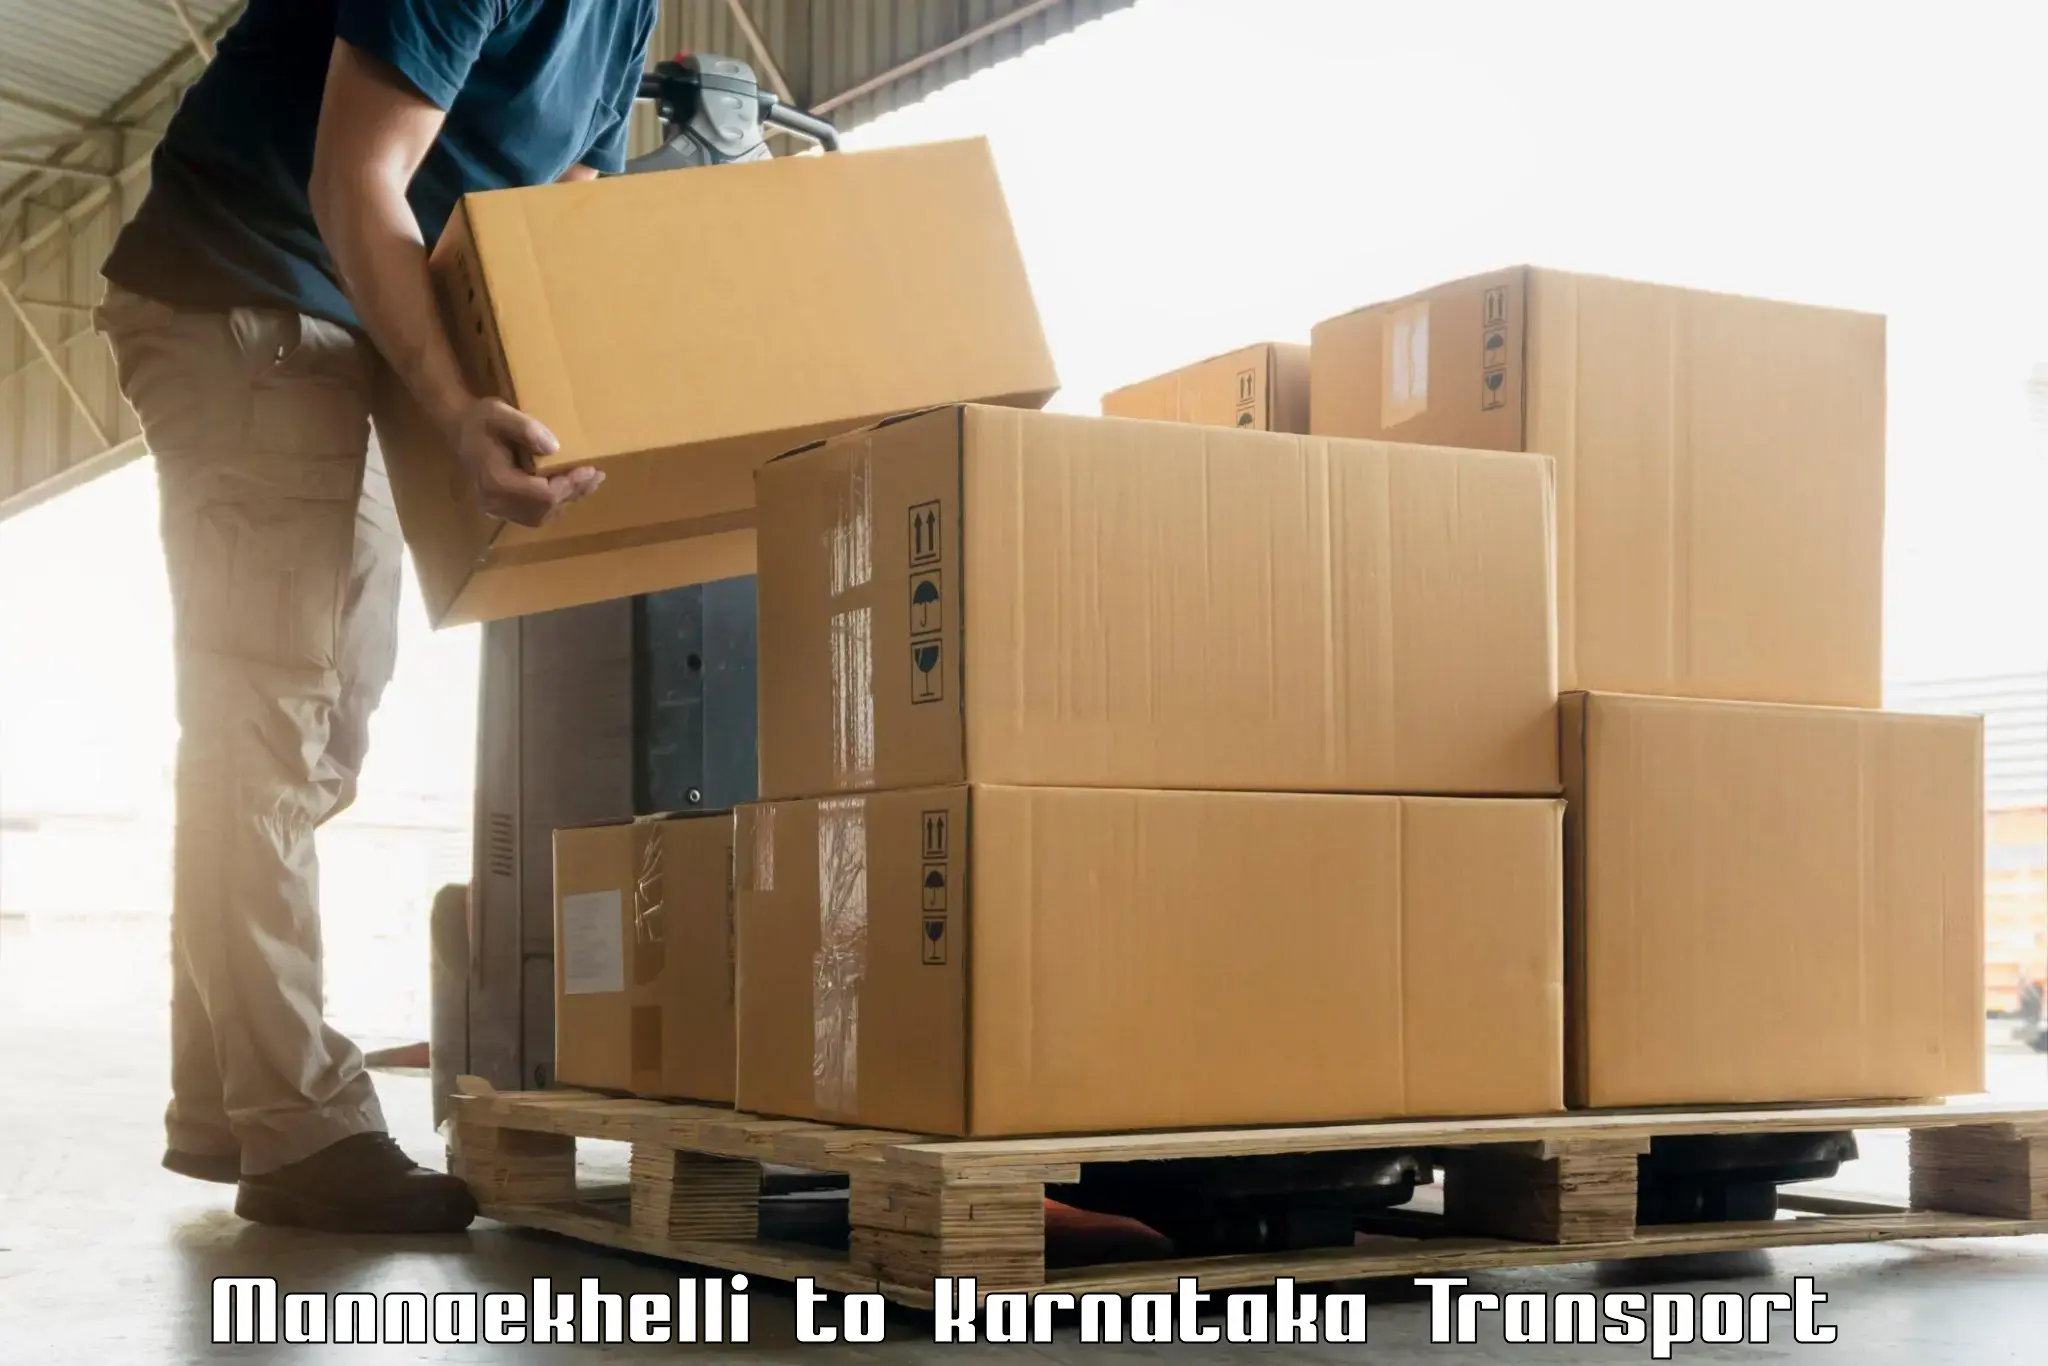 India truck logistics services Mannaekhelli to Doddaballapura